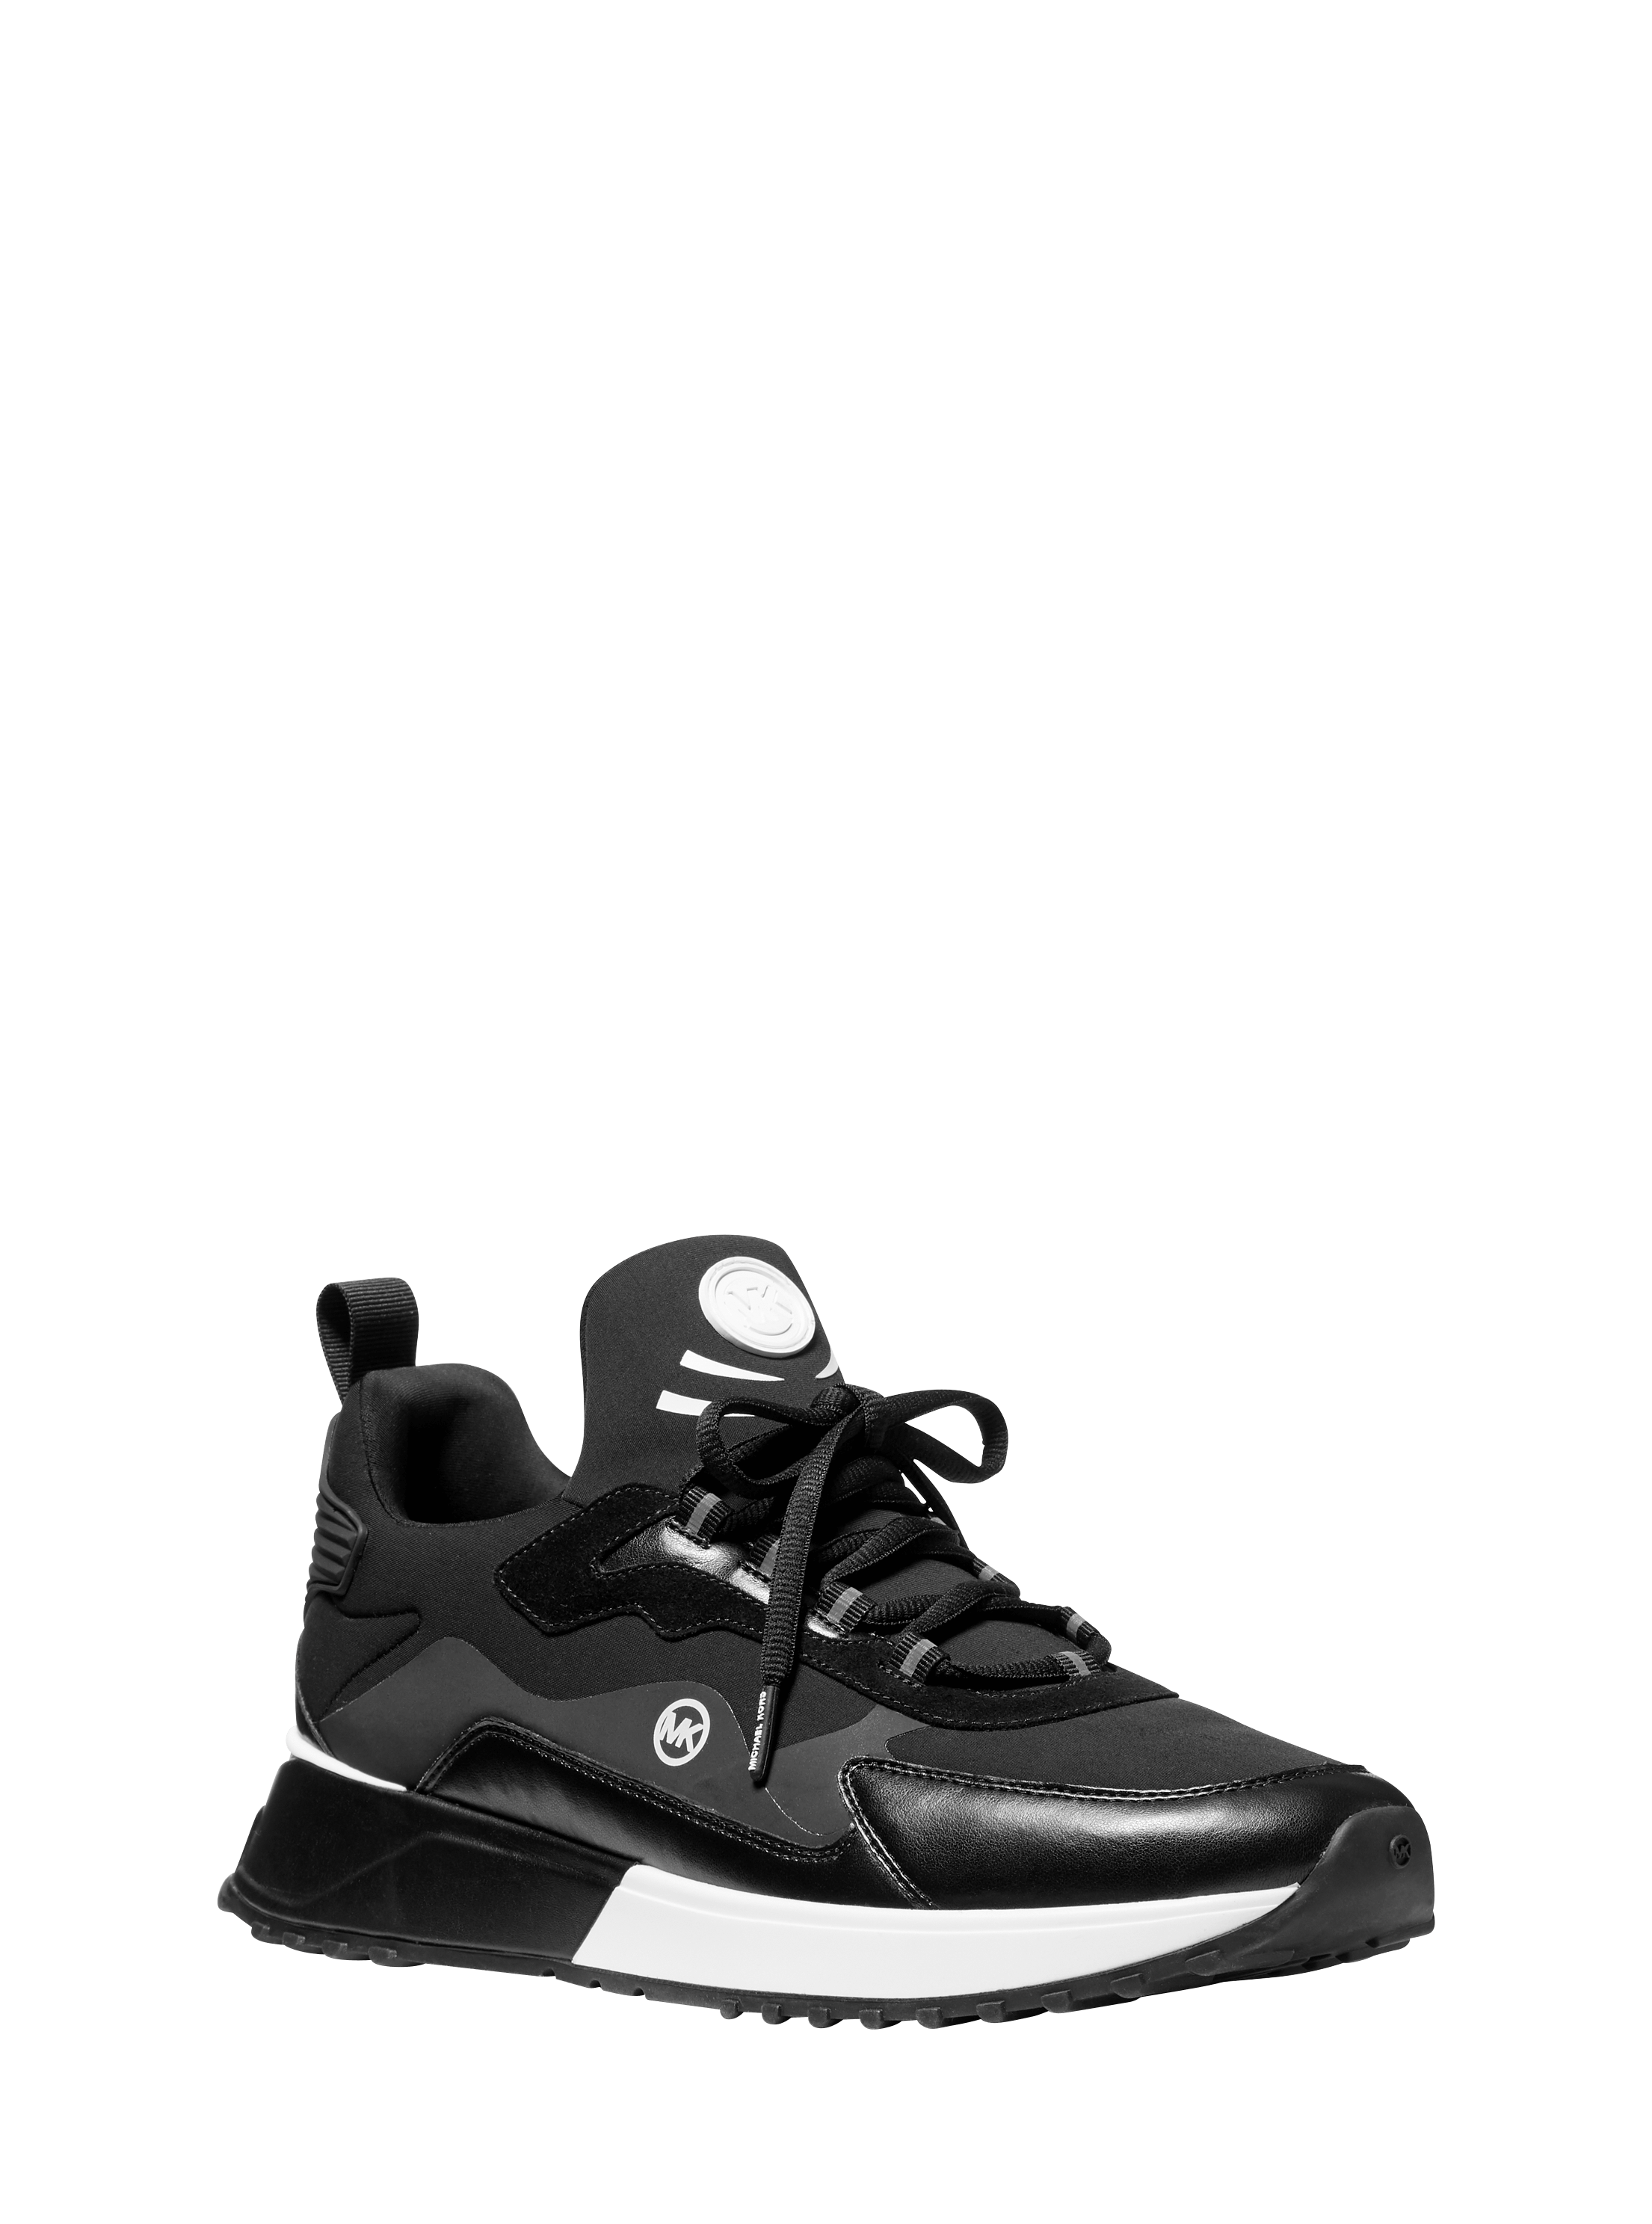 נעלי ספורט תיאו בגוון שחור MICHAEL KORS